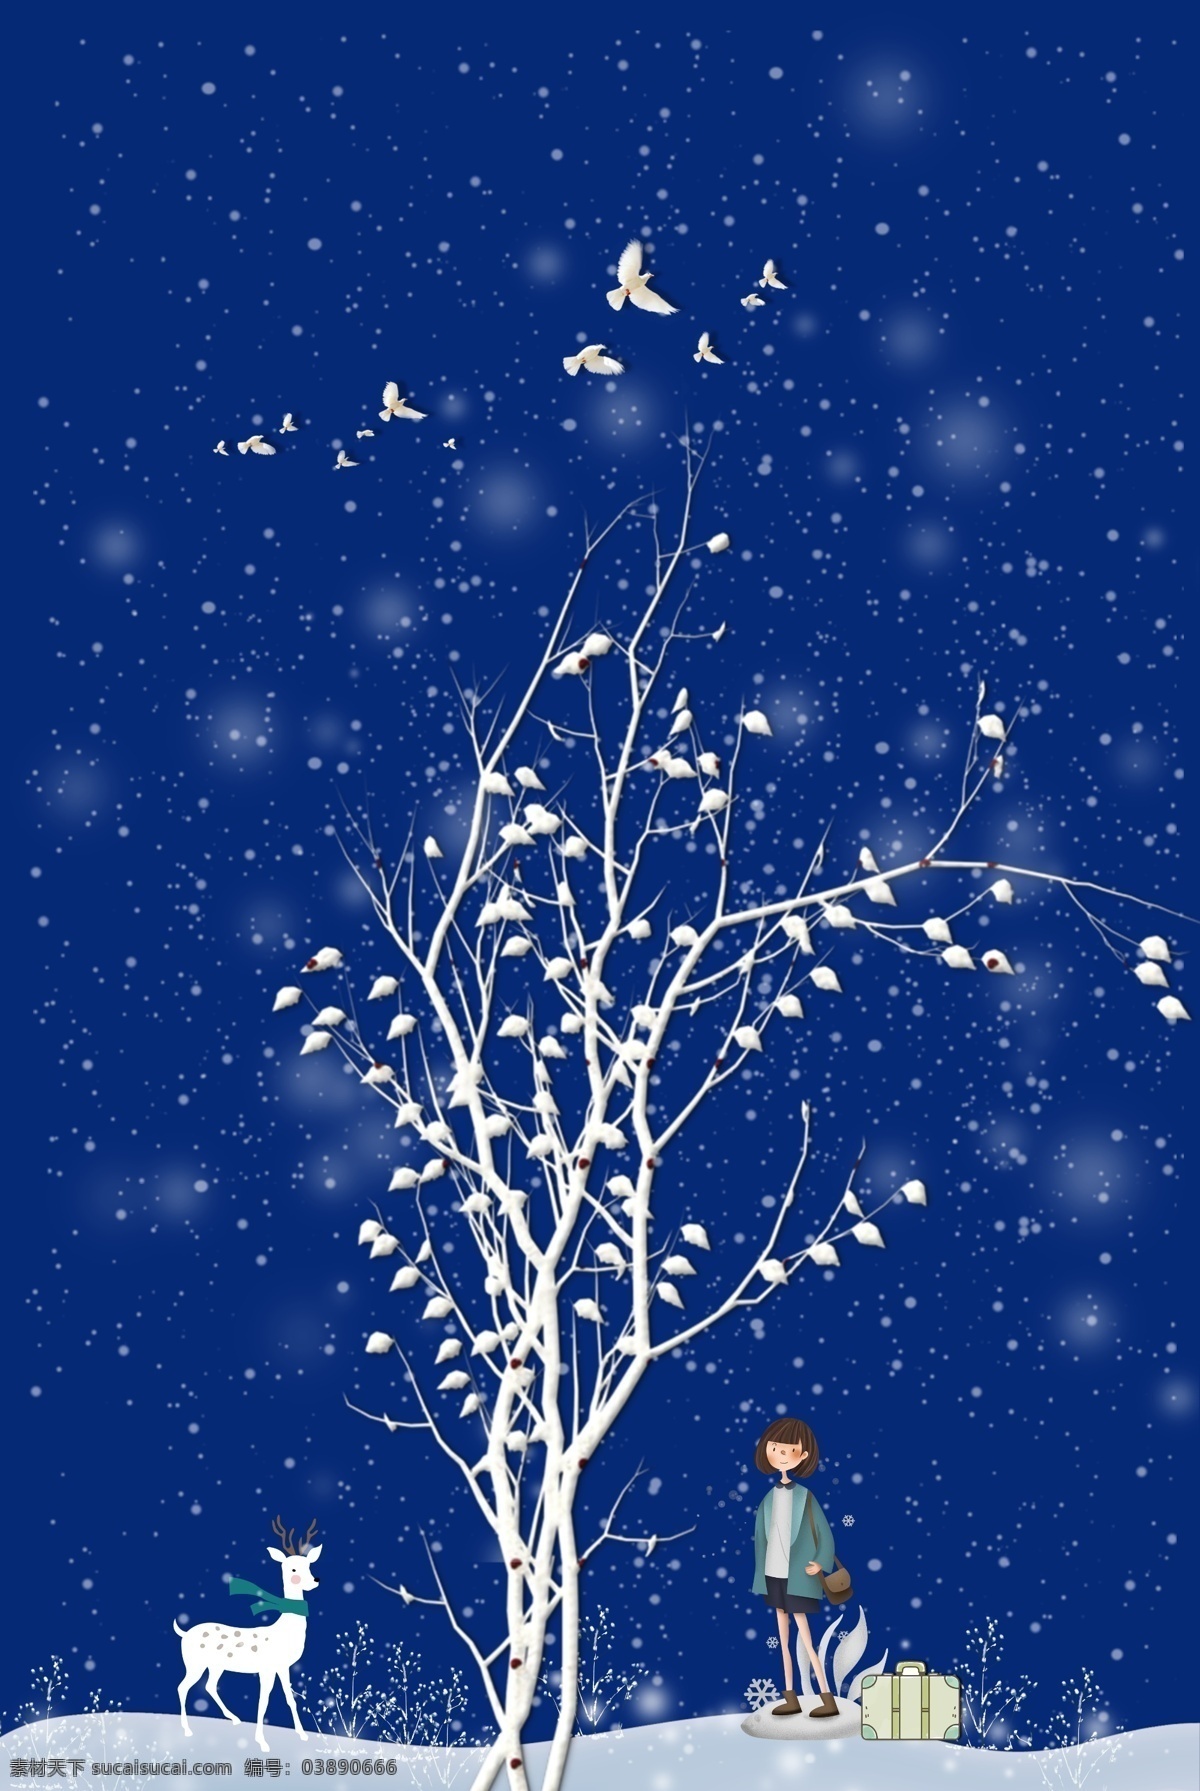 蓝色 圣诞 冬天 唯美 清新 淘宝 背景 白树 白鹿 女孩 飞鸟 回家 淘宝背景 5背景 温暖